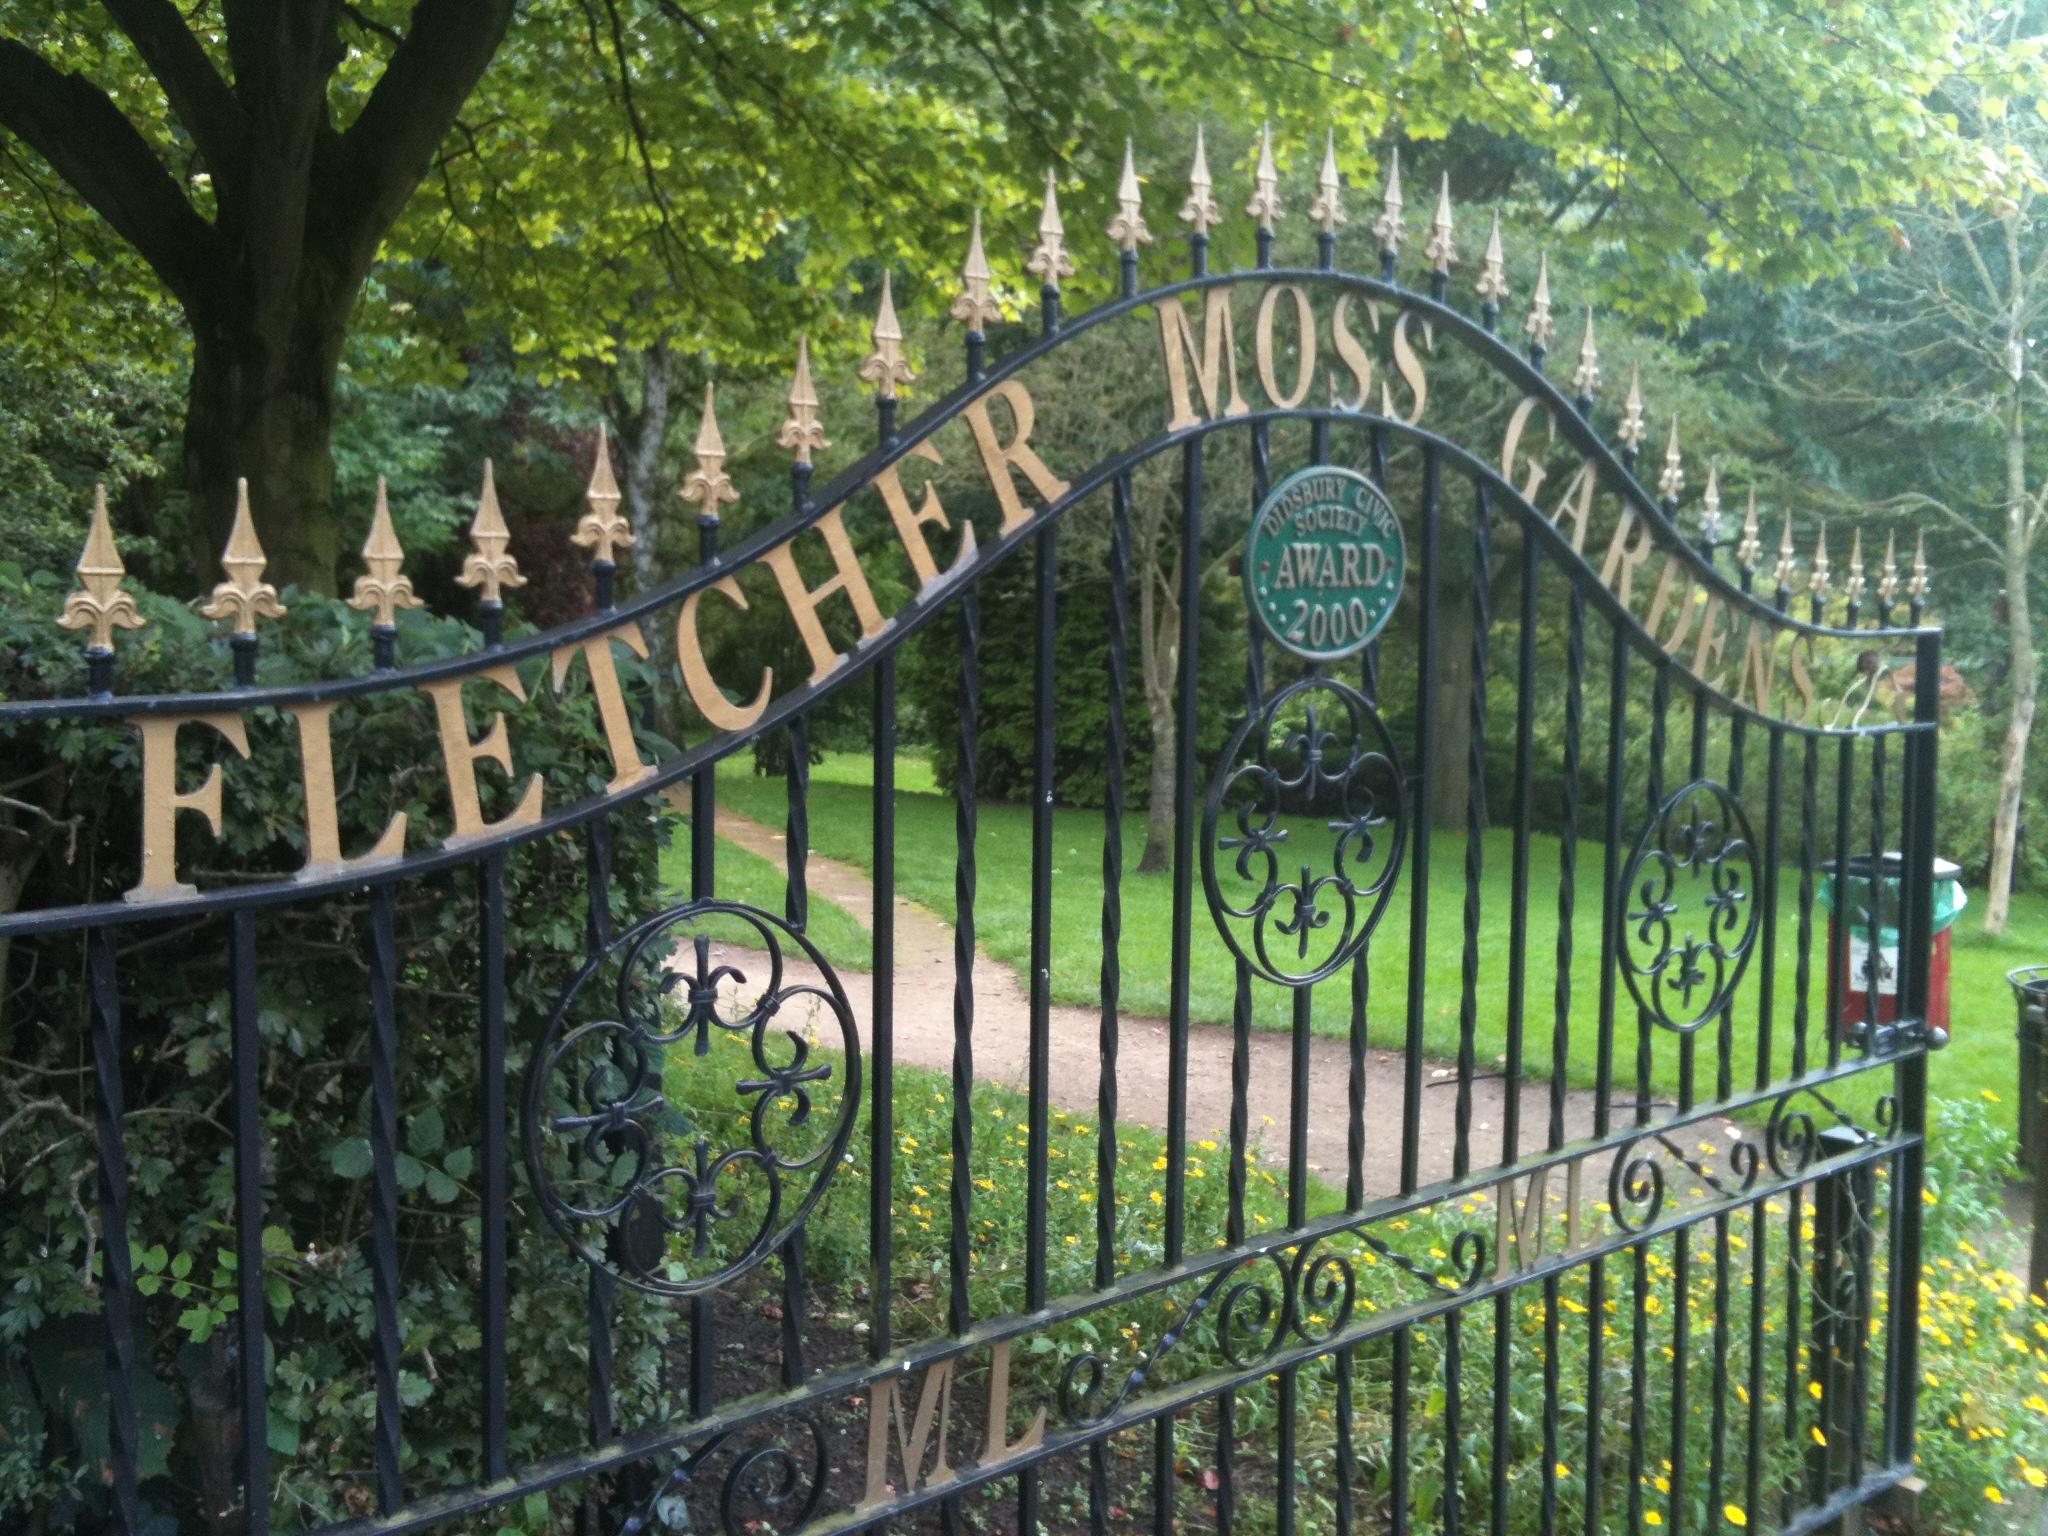 Fletcher Moss Park Botanical Gardens, Didsbury, Manchester